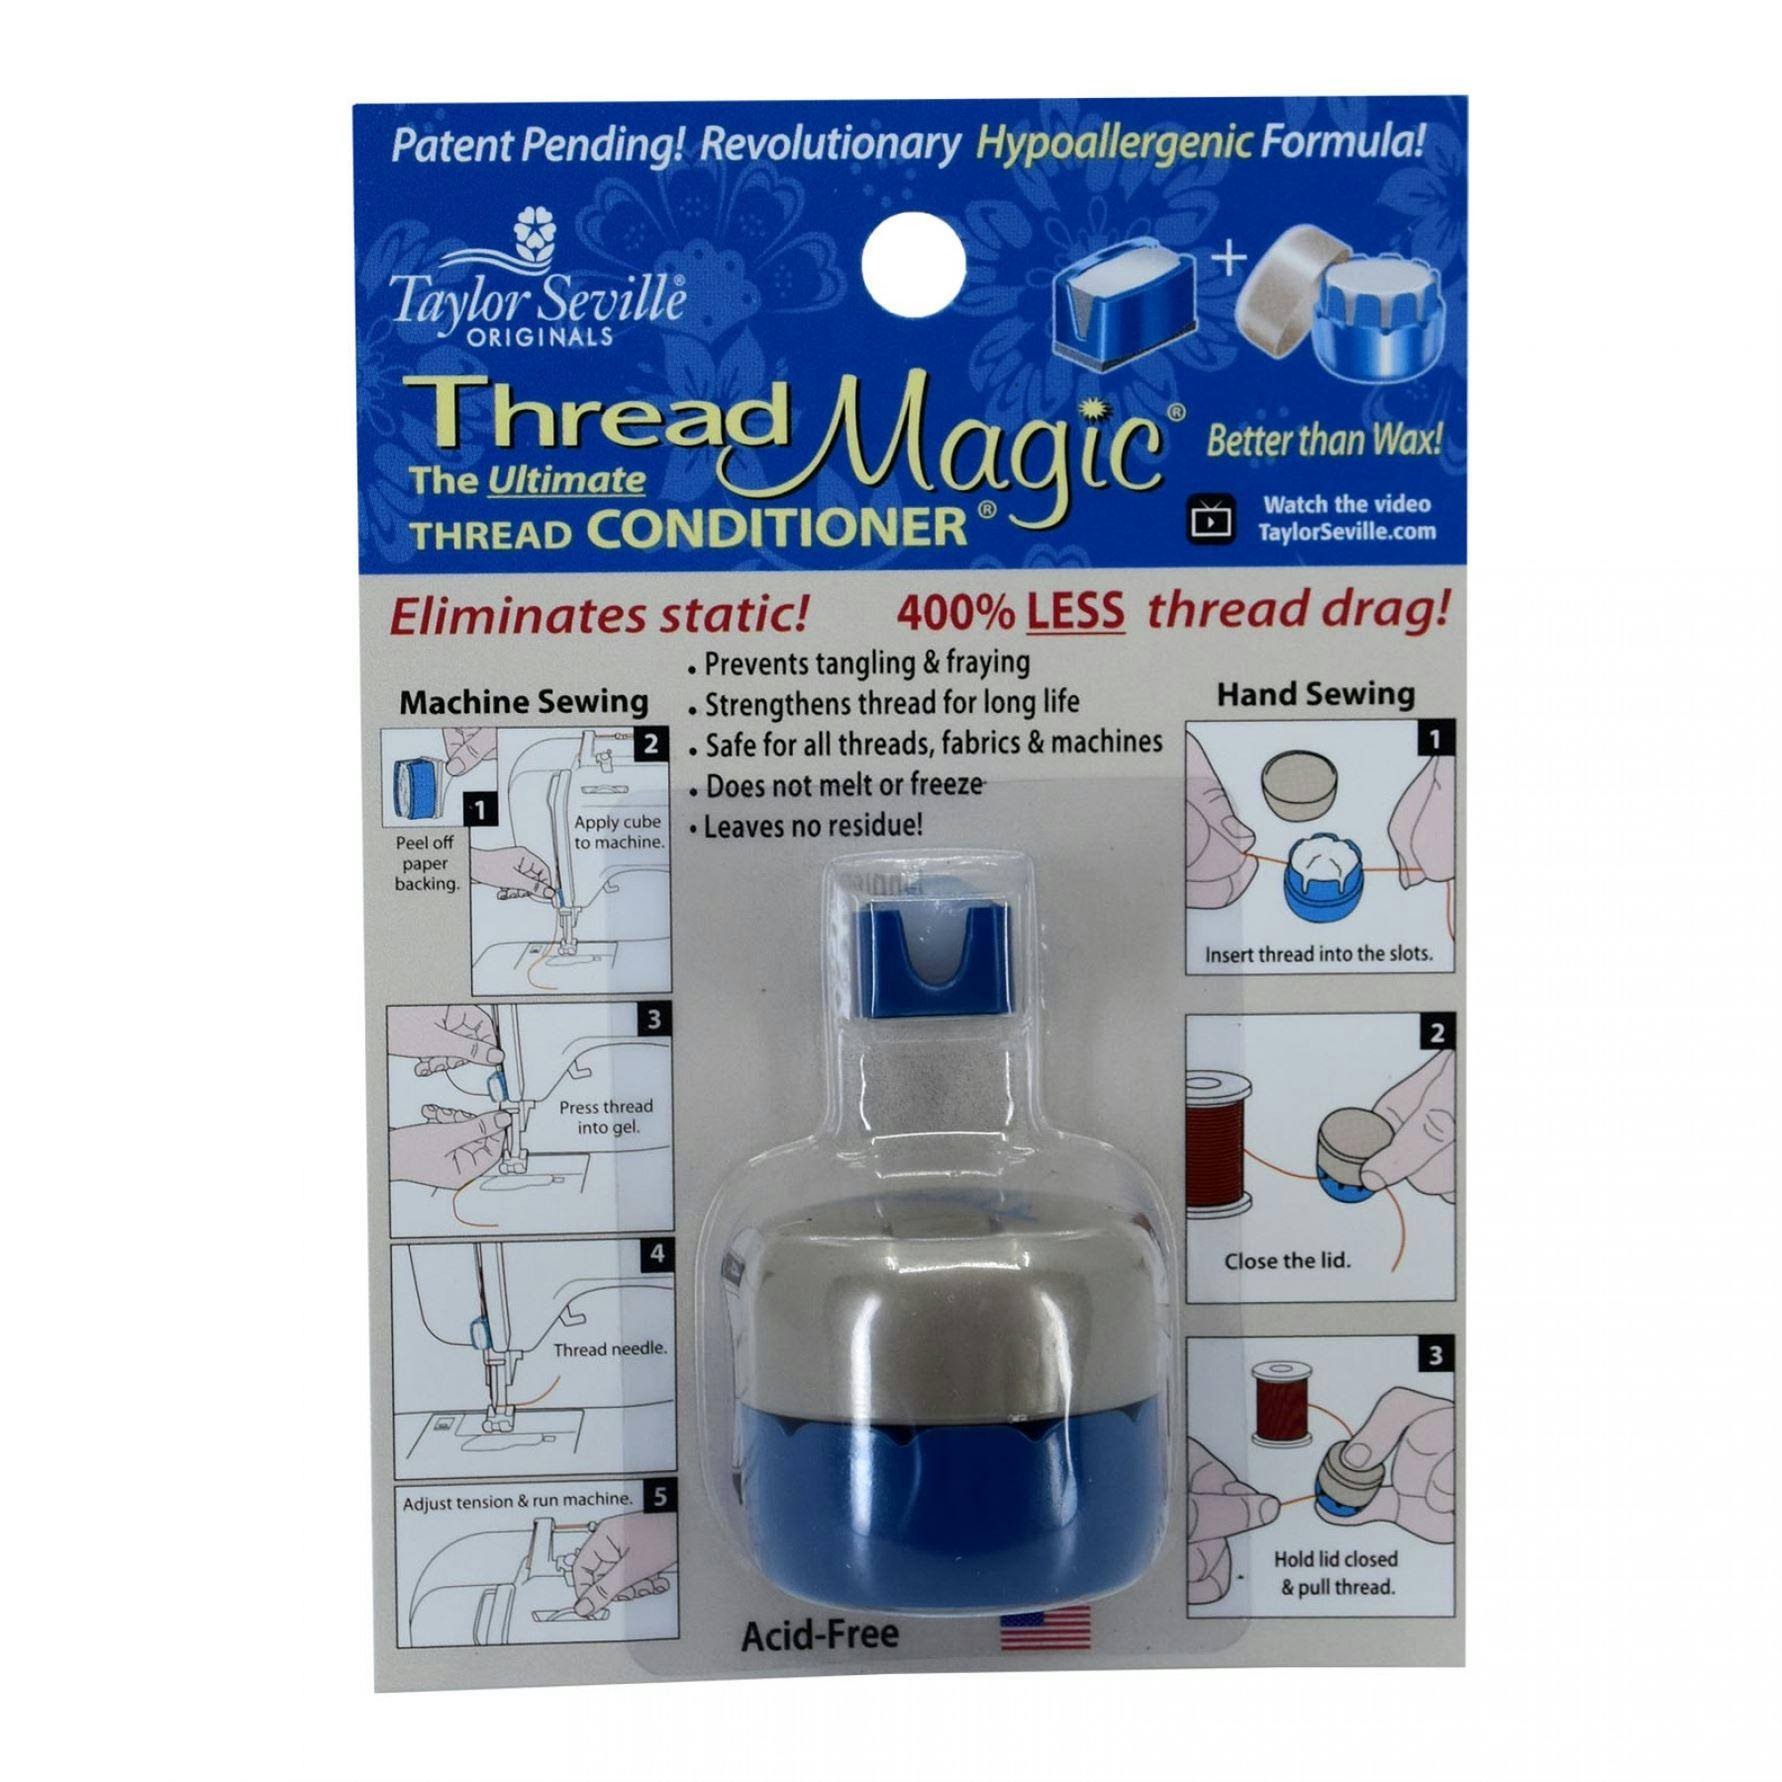 Thread Magic conditioner